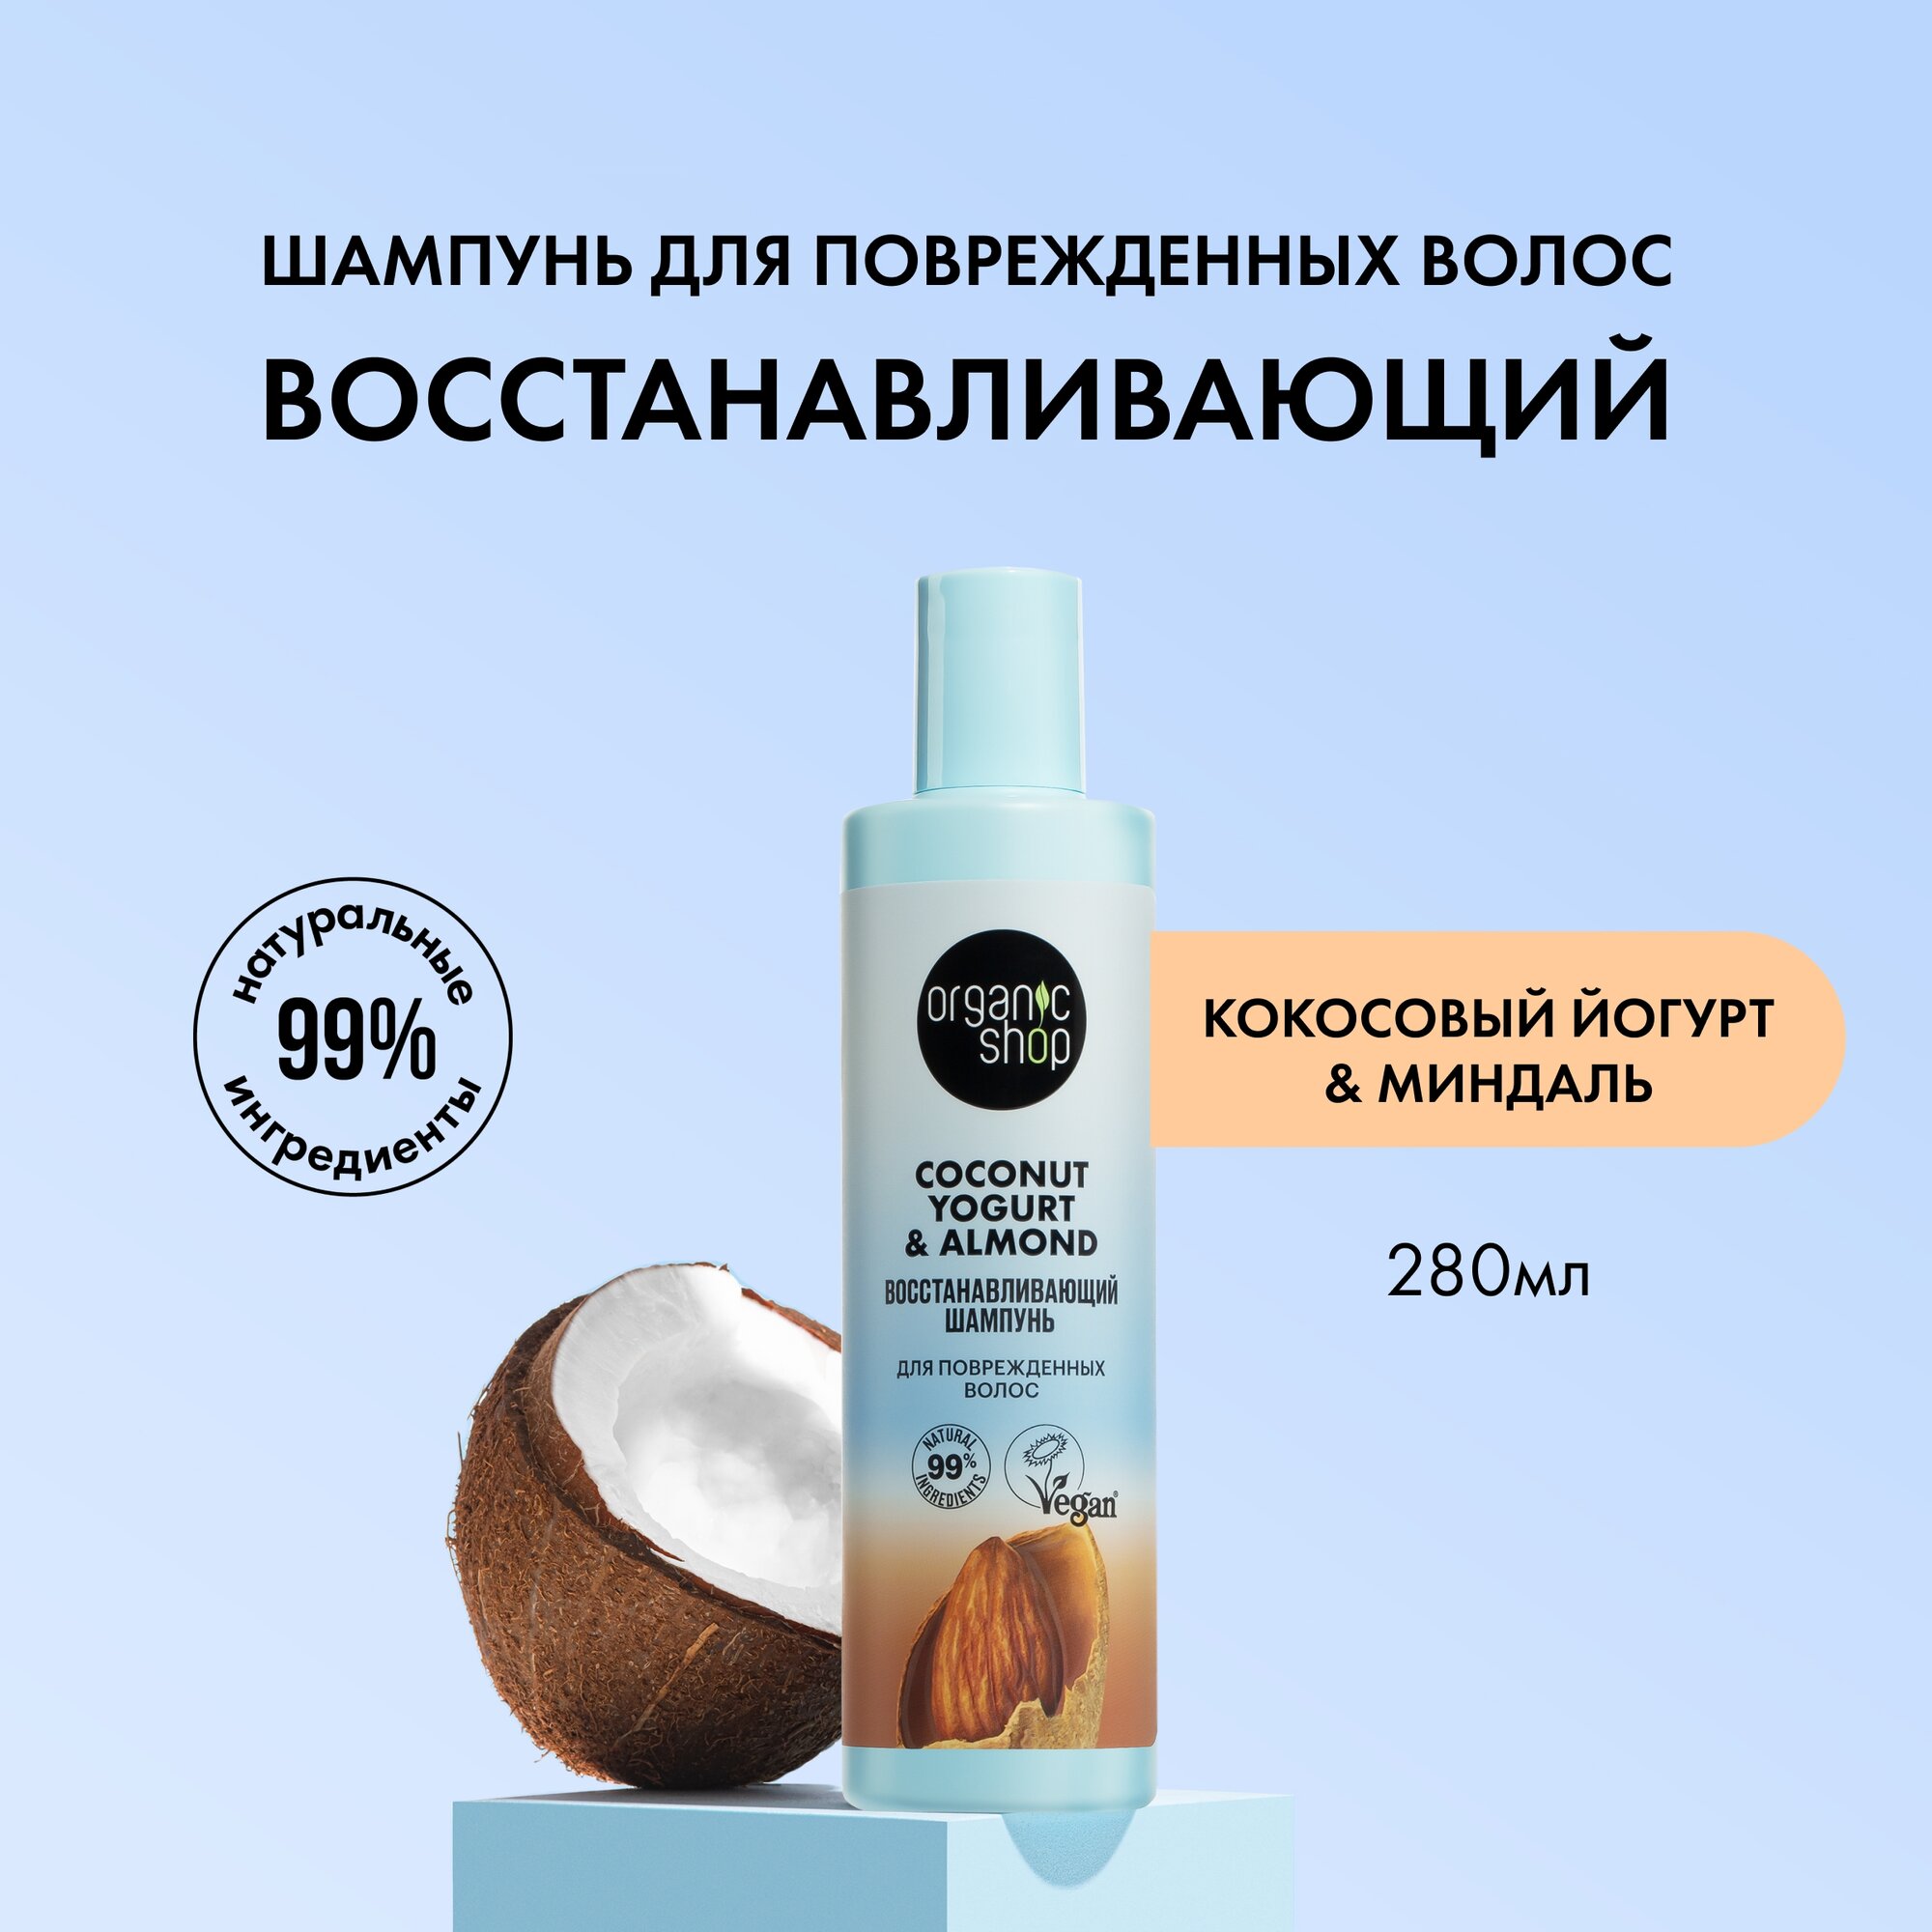 Шампунь для поврежденных волос Coconut yogurt Восстанавливающий, 280 мл Organic Shop - фото №1